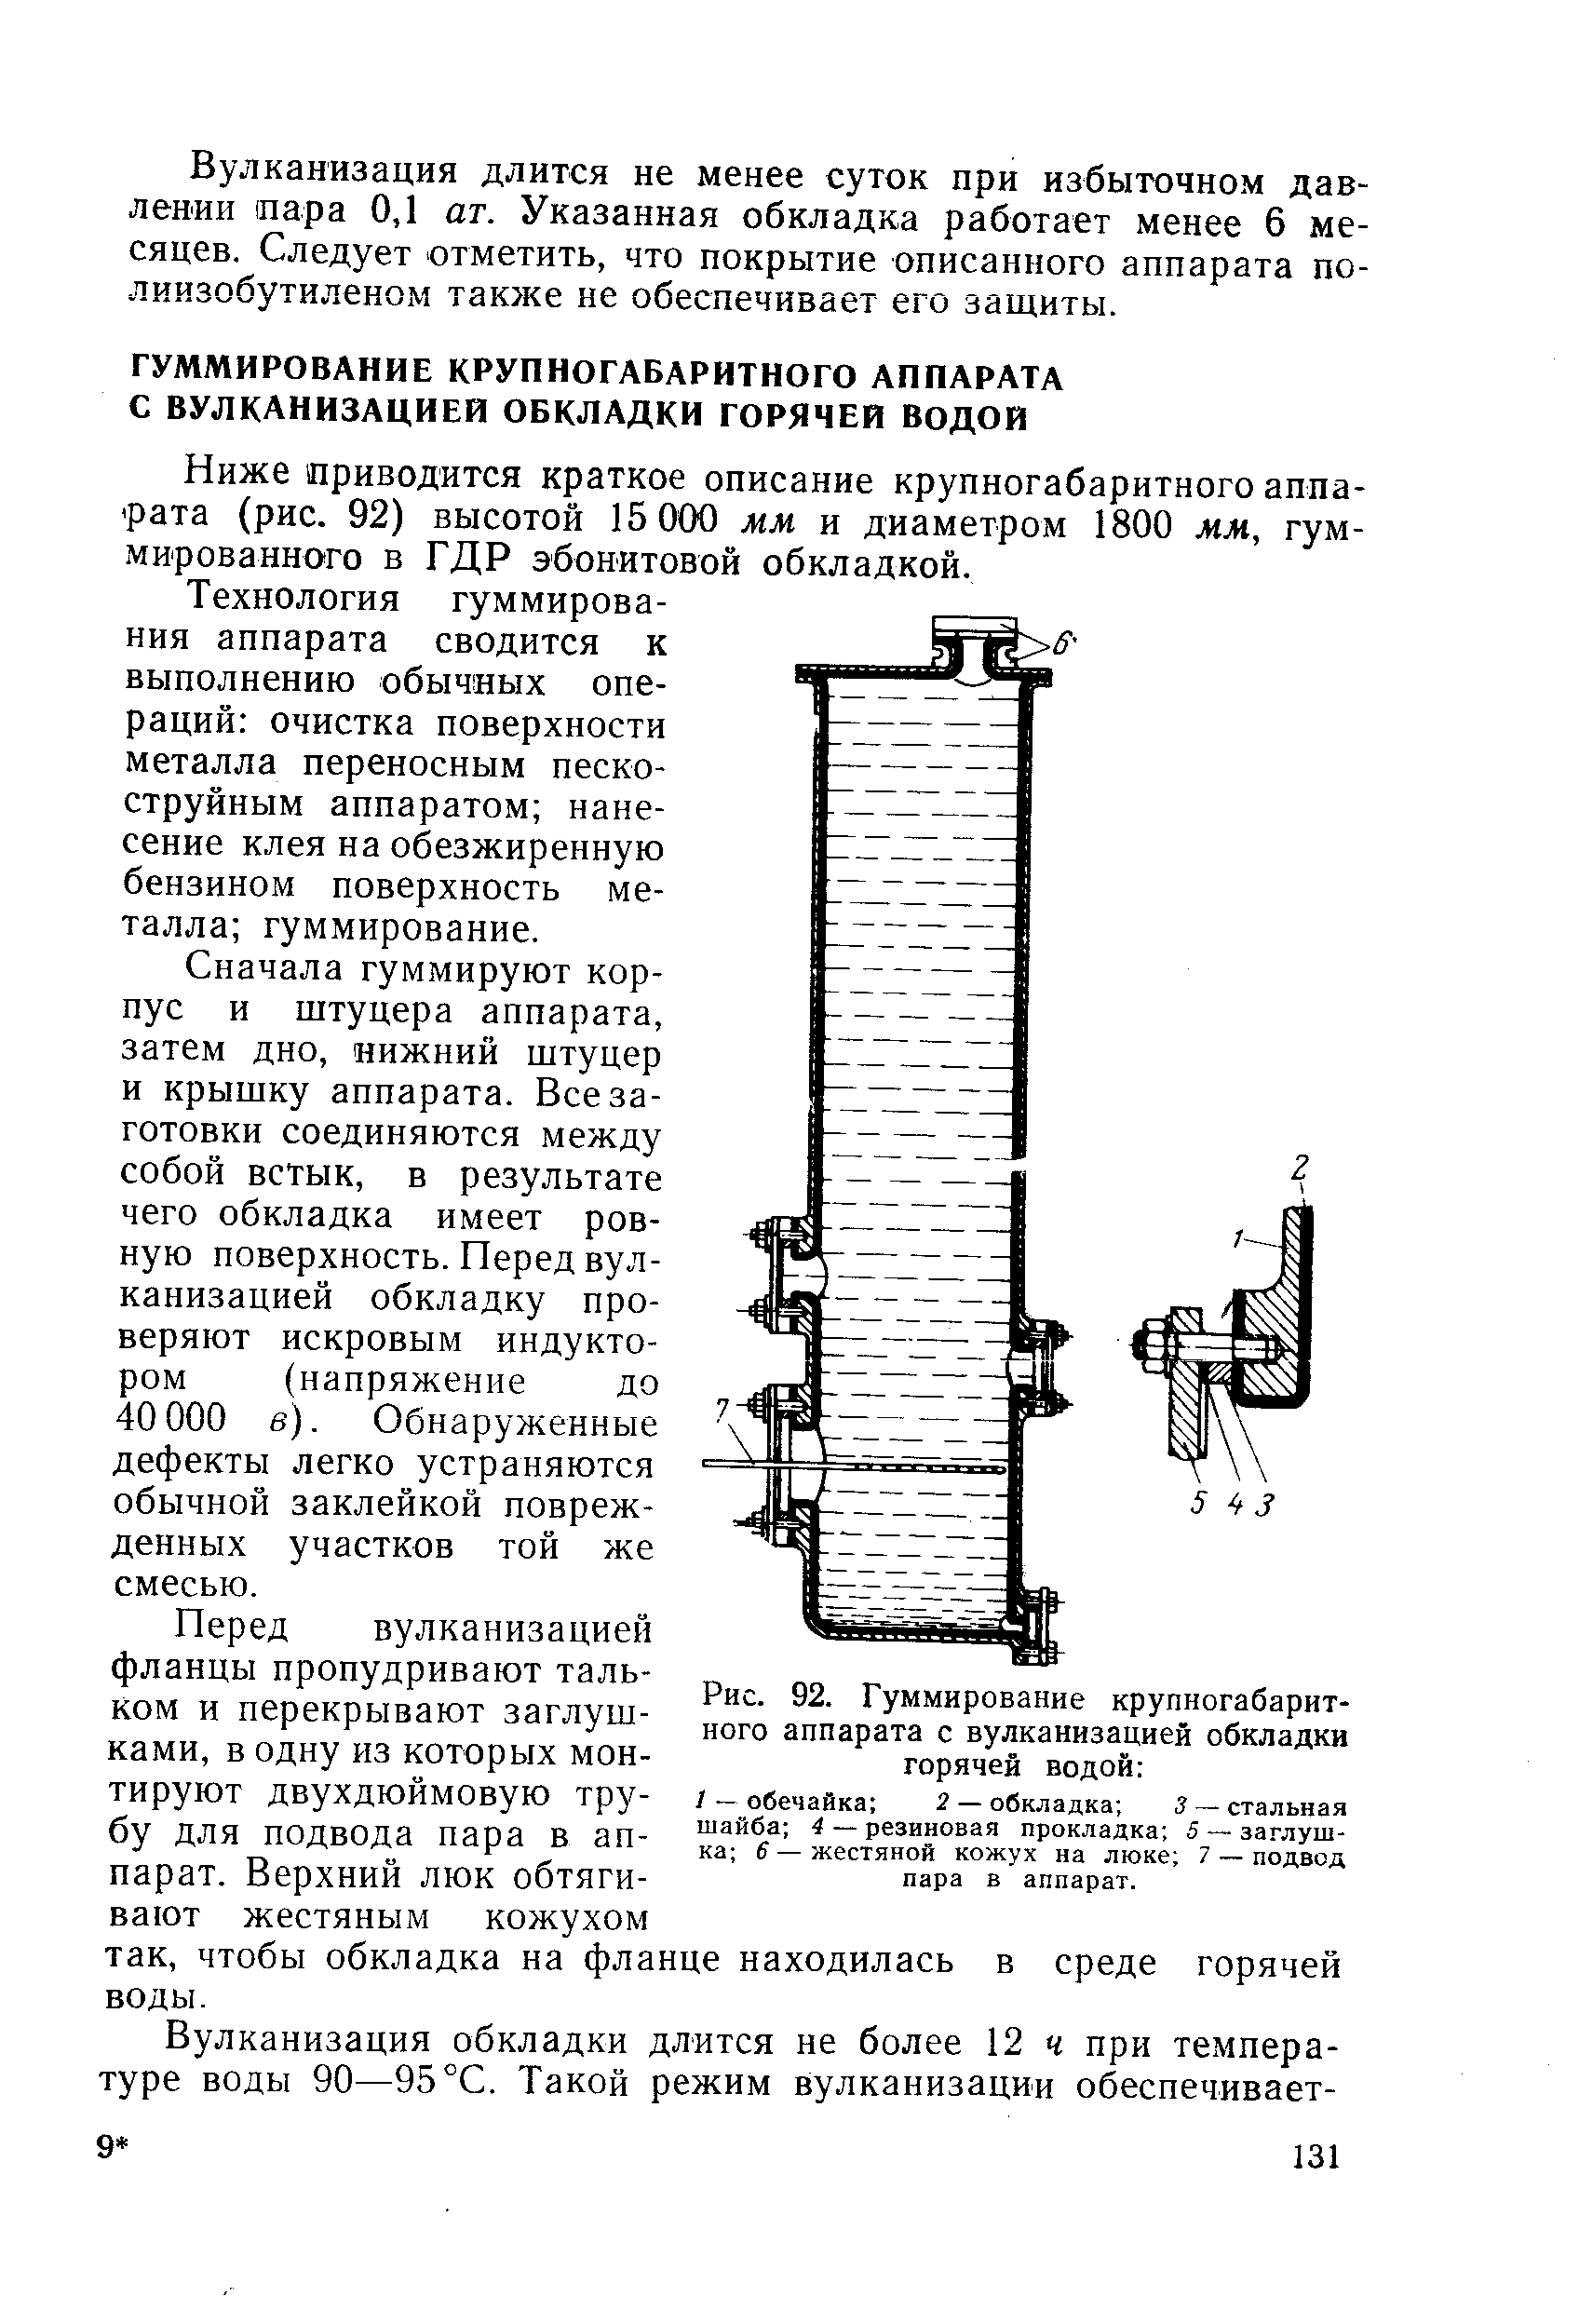 Ниже приводится краткое описание крупногабаритного аппарата (рис. 92) высотой 15 000 мм и диаметром 1800 мм, гуммированного в ГДР эбонитовой обкладкой.